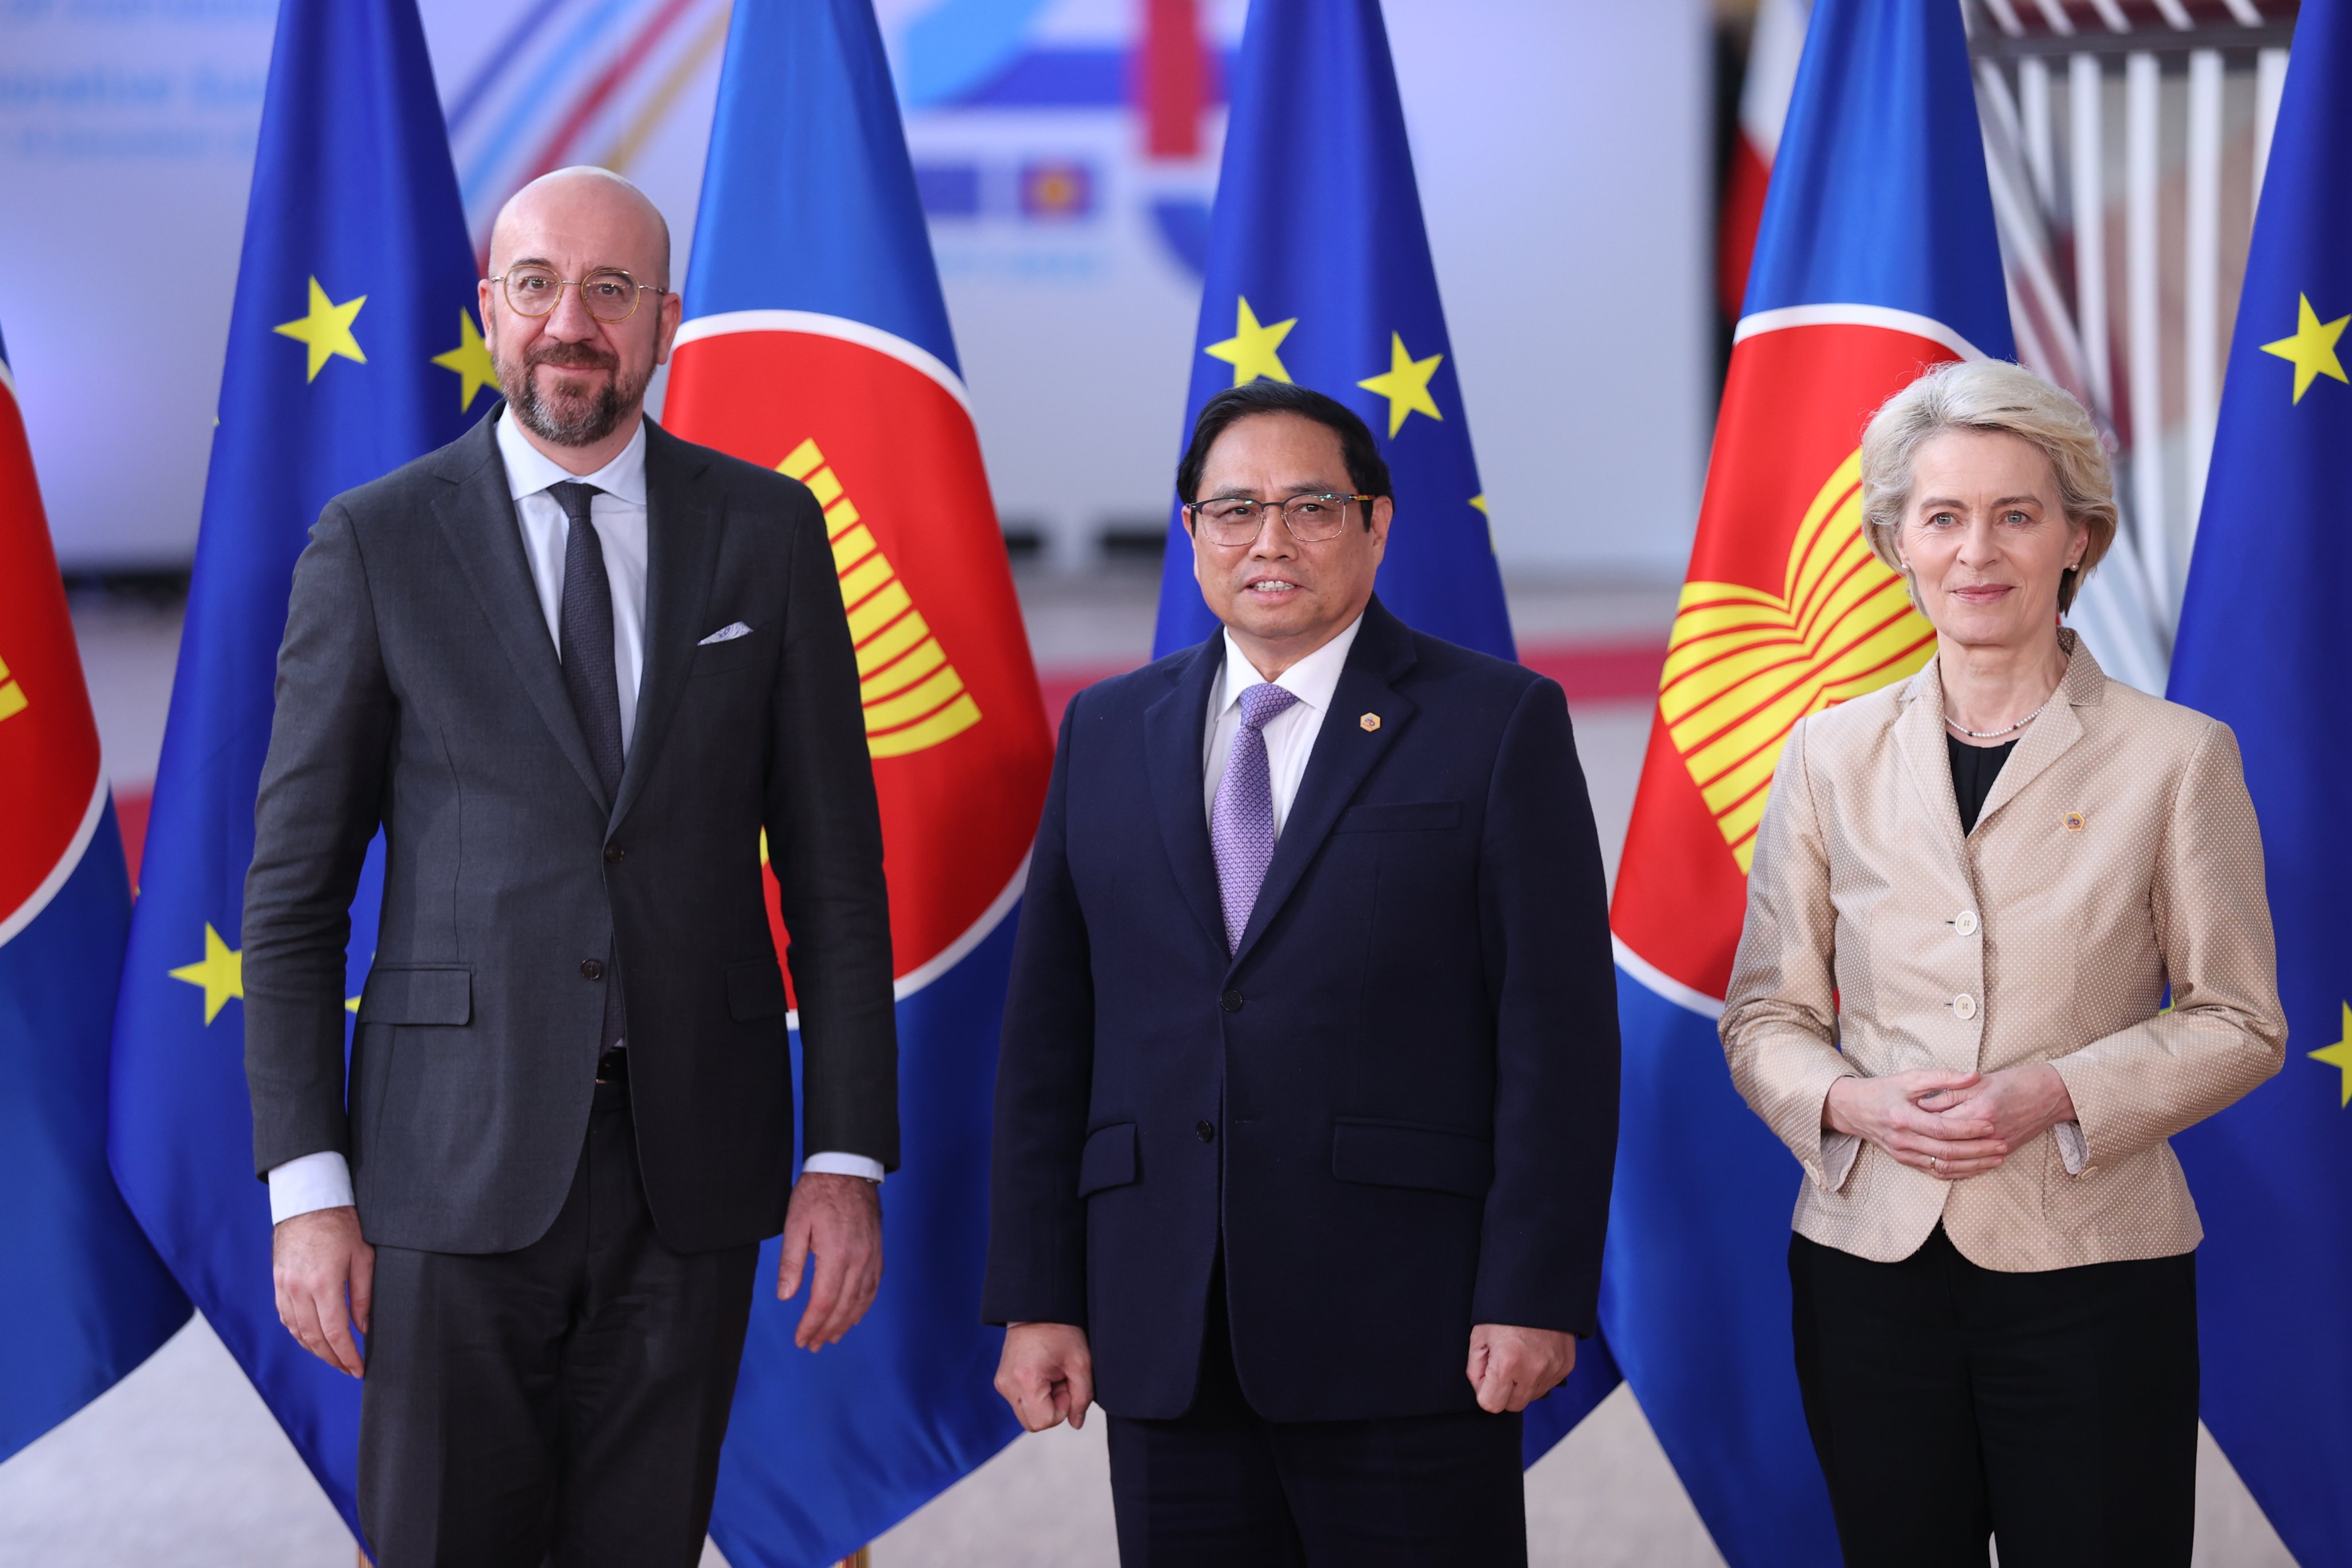 Thủ tướng Phạm Minh Chính đã đến tham dự Hội nghị ASEAN-EU tại Bỉ, đưa ra những đề xuất xây dựng mối quan hệ hợp tác giữa các quốc gia về kinh tế, chính trị và an ninh, tạo đà cho sự phát triển và tăng trưởng bền vững trên toàn khu vực.